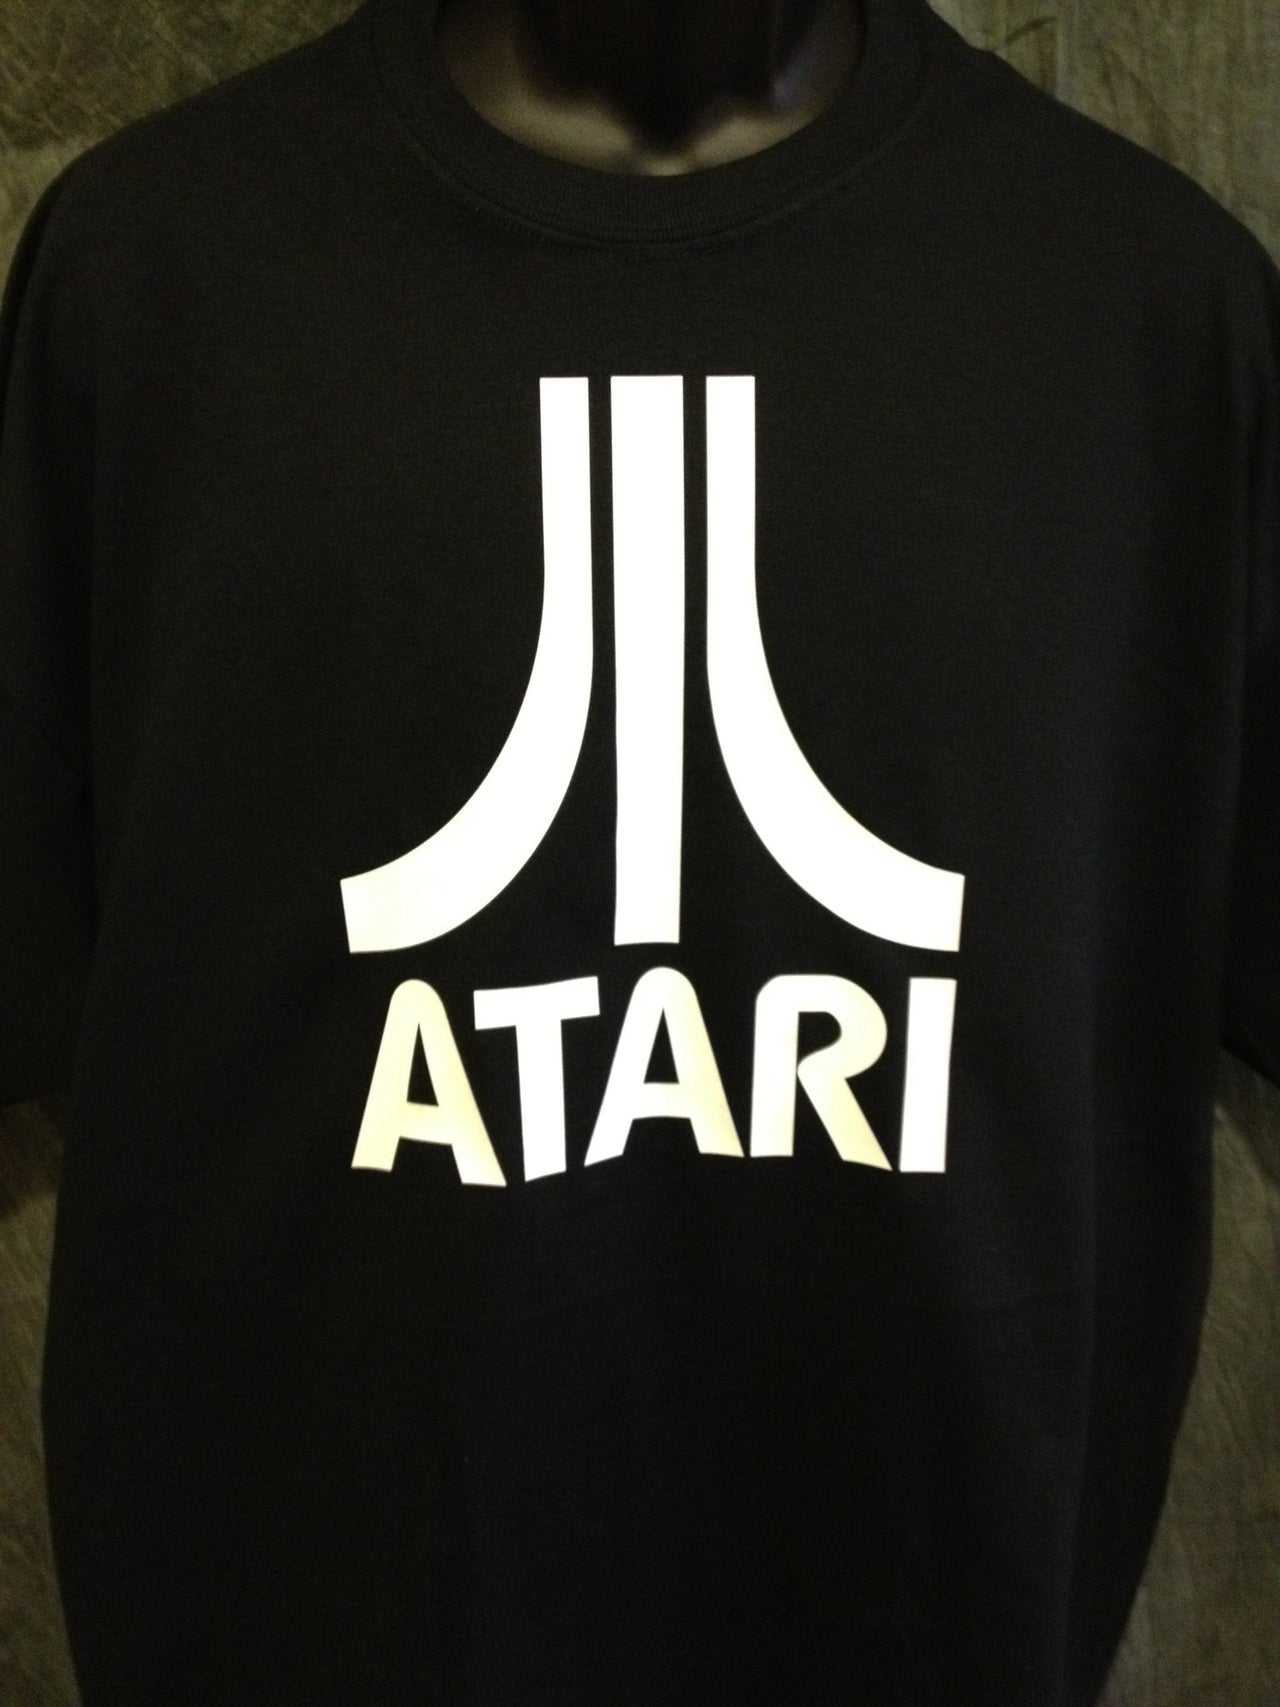 Atari Logo Tshirt: Black With White Print - TshirtNow.net - 5